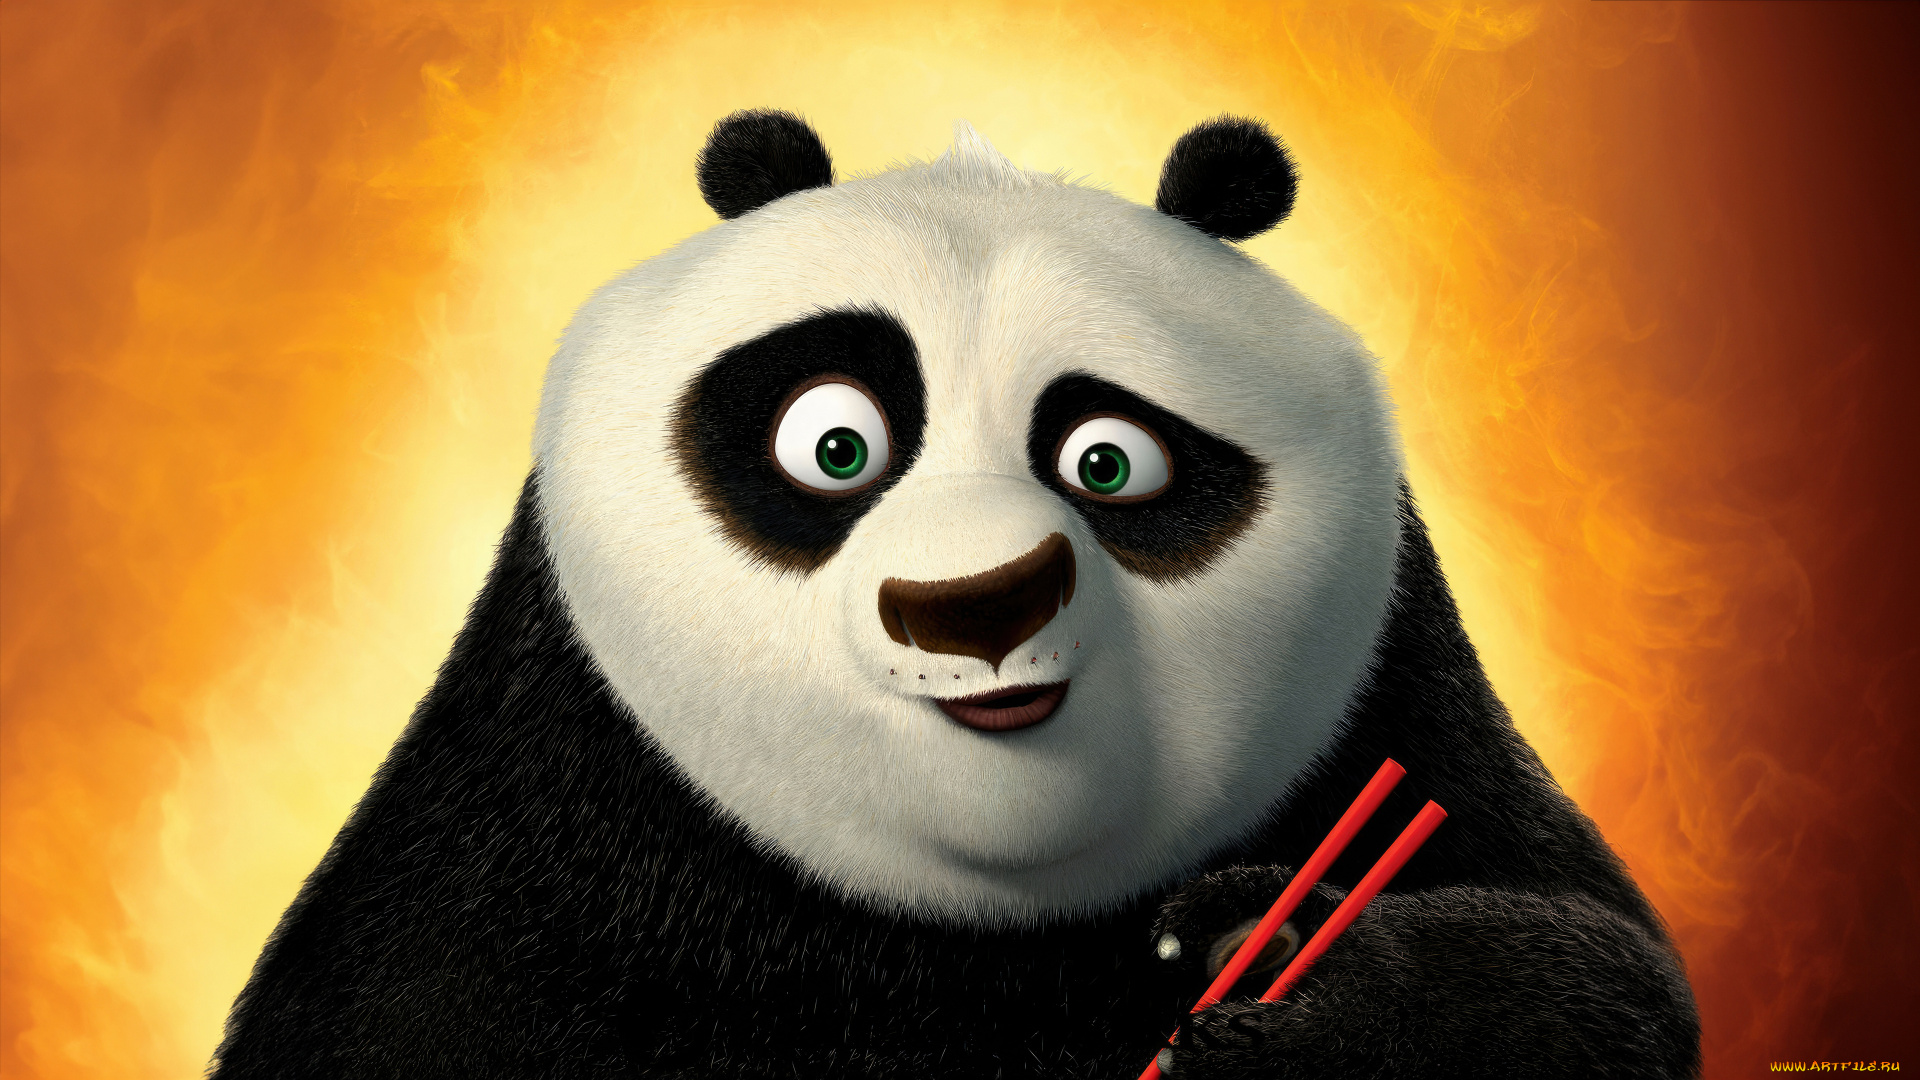 kung, fu, panda, 2, мультфильмы, кунг, фу, панда, персонаж, мультфильм, фэнтези, приключения, семейный, джек, блэк, jack, black, po, озвучка